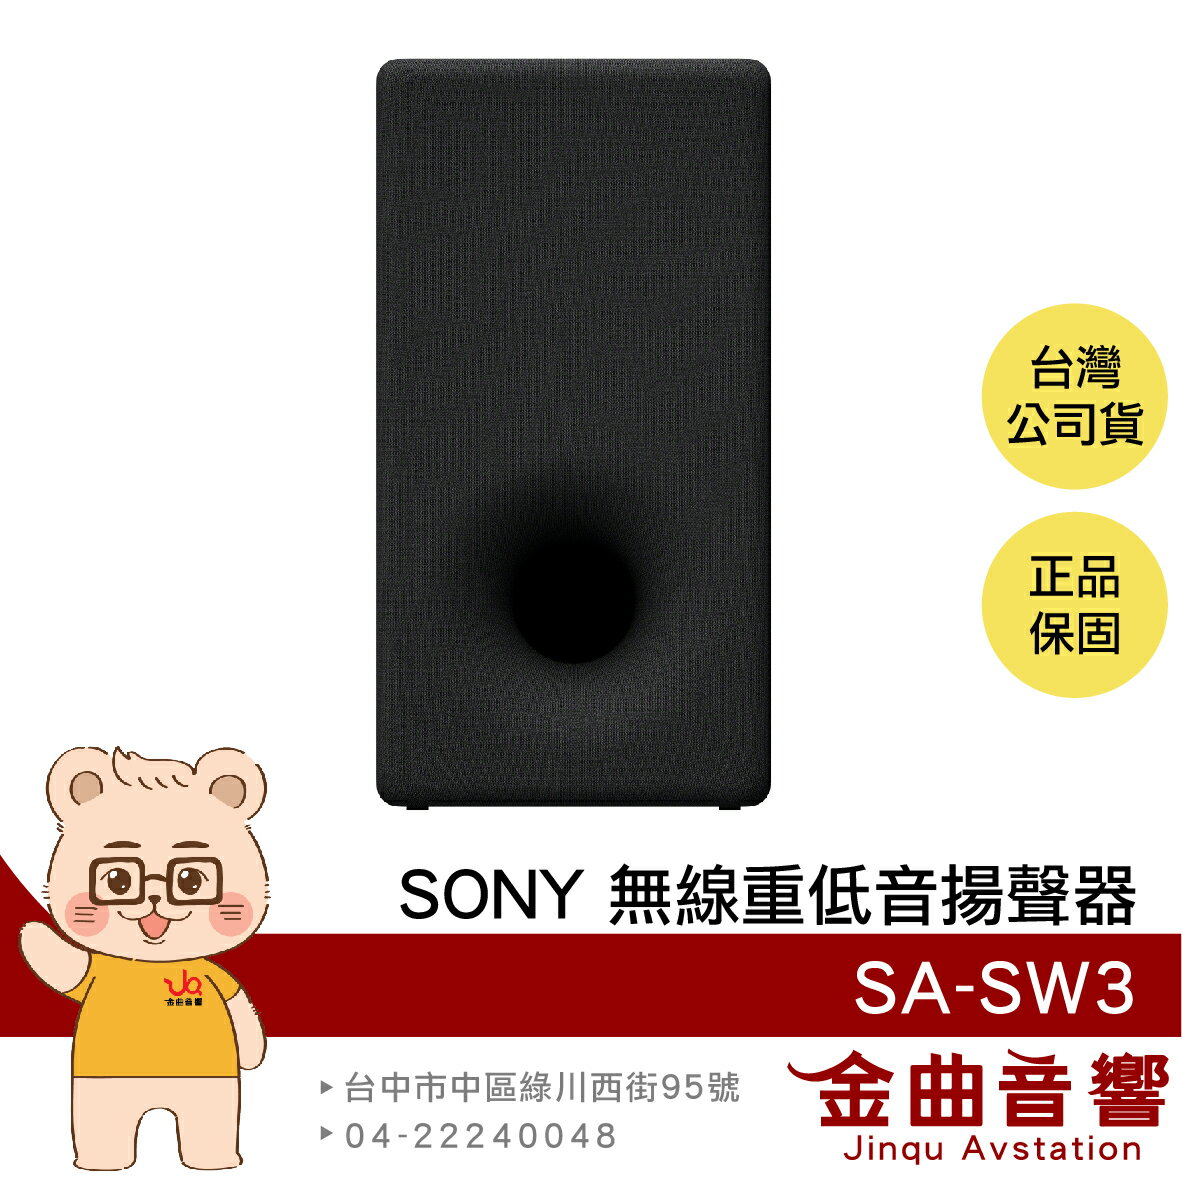 SONY 索尼 SA-SW3 200W 無線 重低音 揚聲器 | 金曲音響